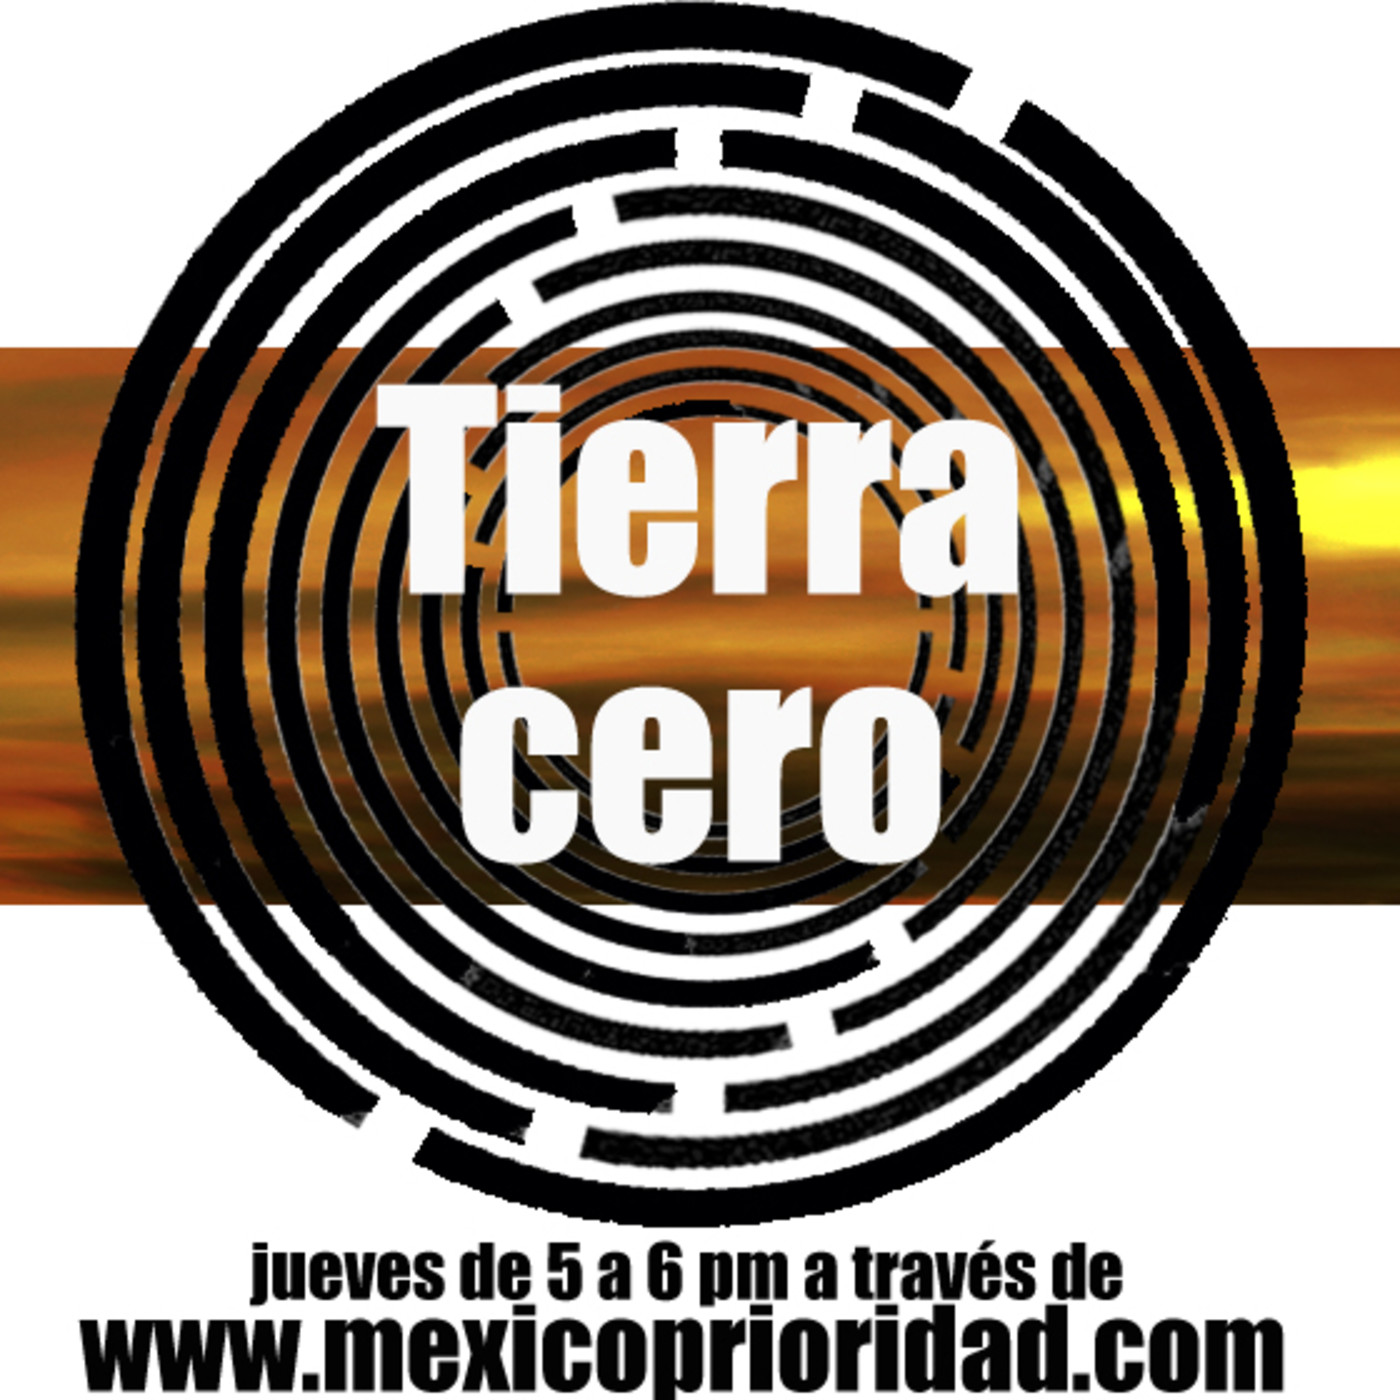 Tierra Cero 28 Febrero 2019 "Exposición Pictórica Arte vs Sociedad,Sociedad vs Arte"